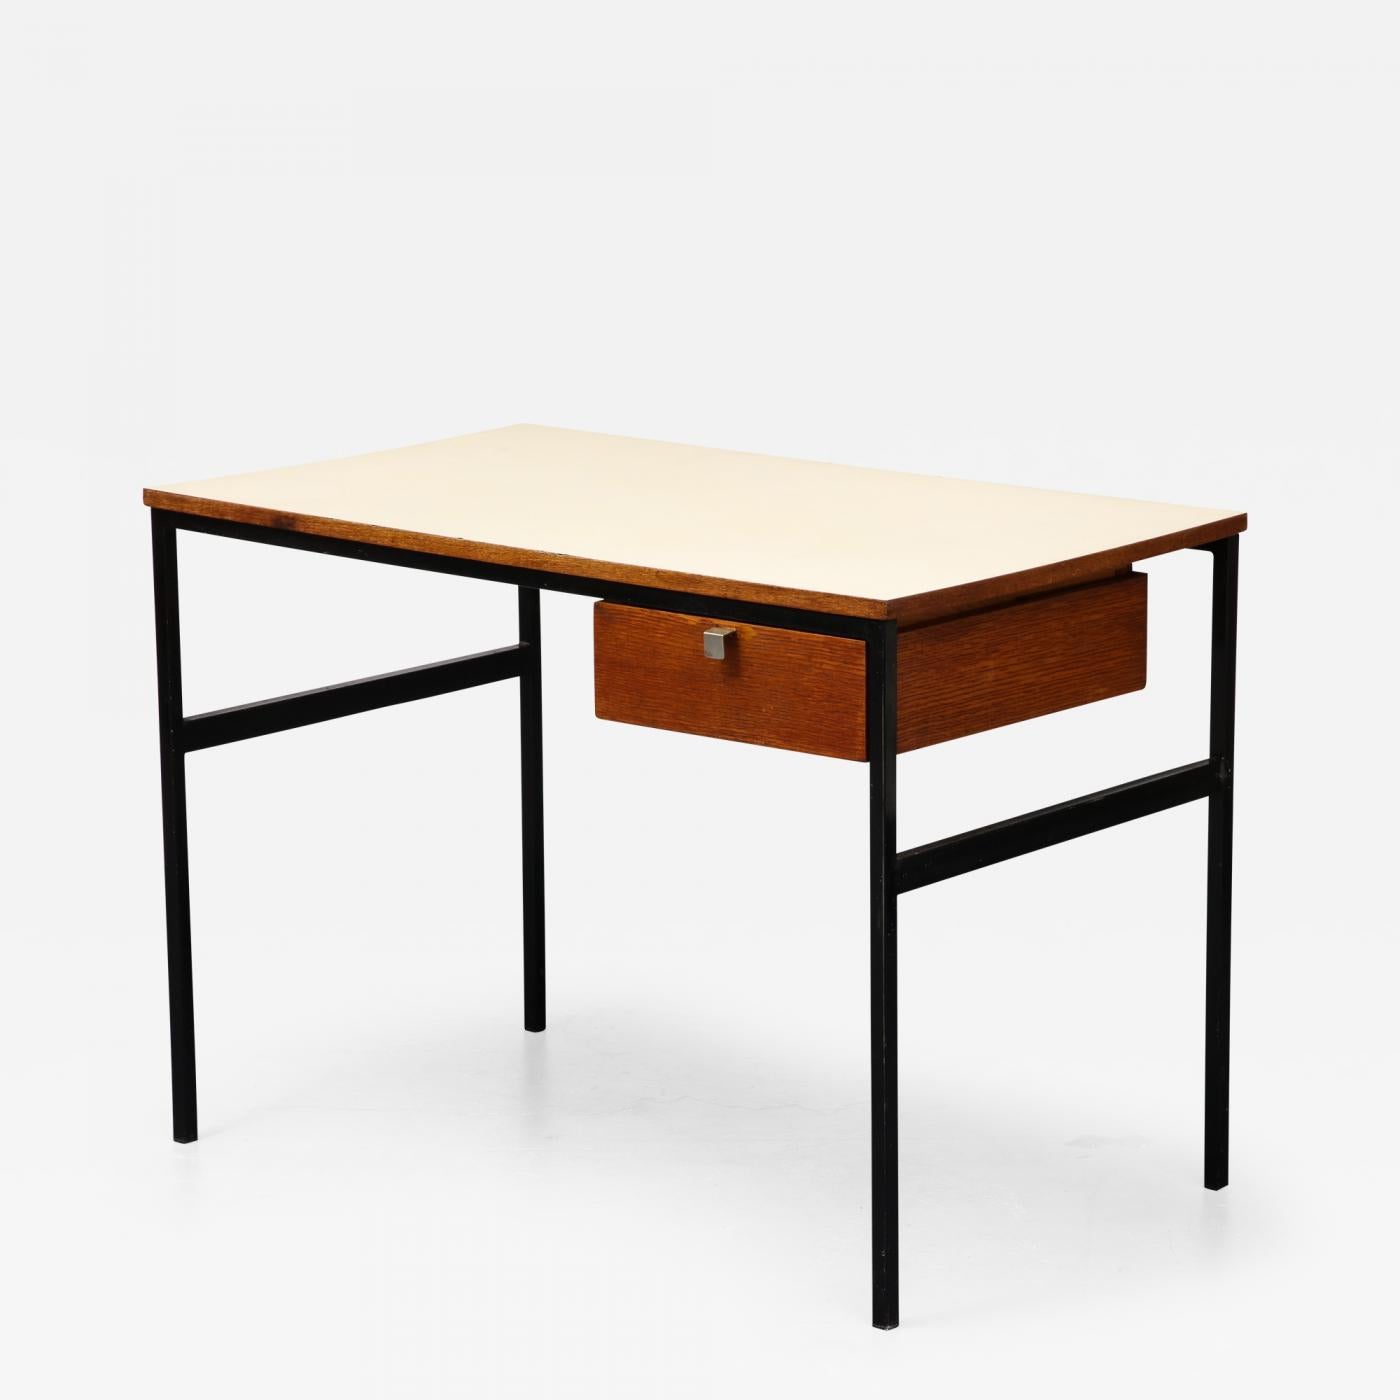 Schreibtisch aus Eiche, Stahl und Laminat von Pierre Paulin, Frankreich

Eleganter Schreibtisch mit klaren Linien und schöner Patina.

